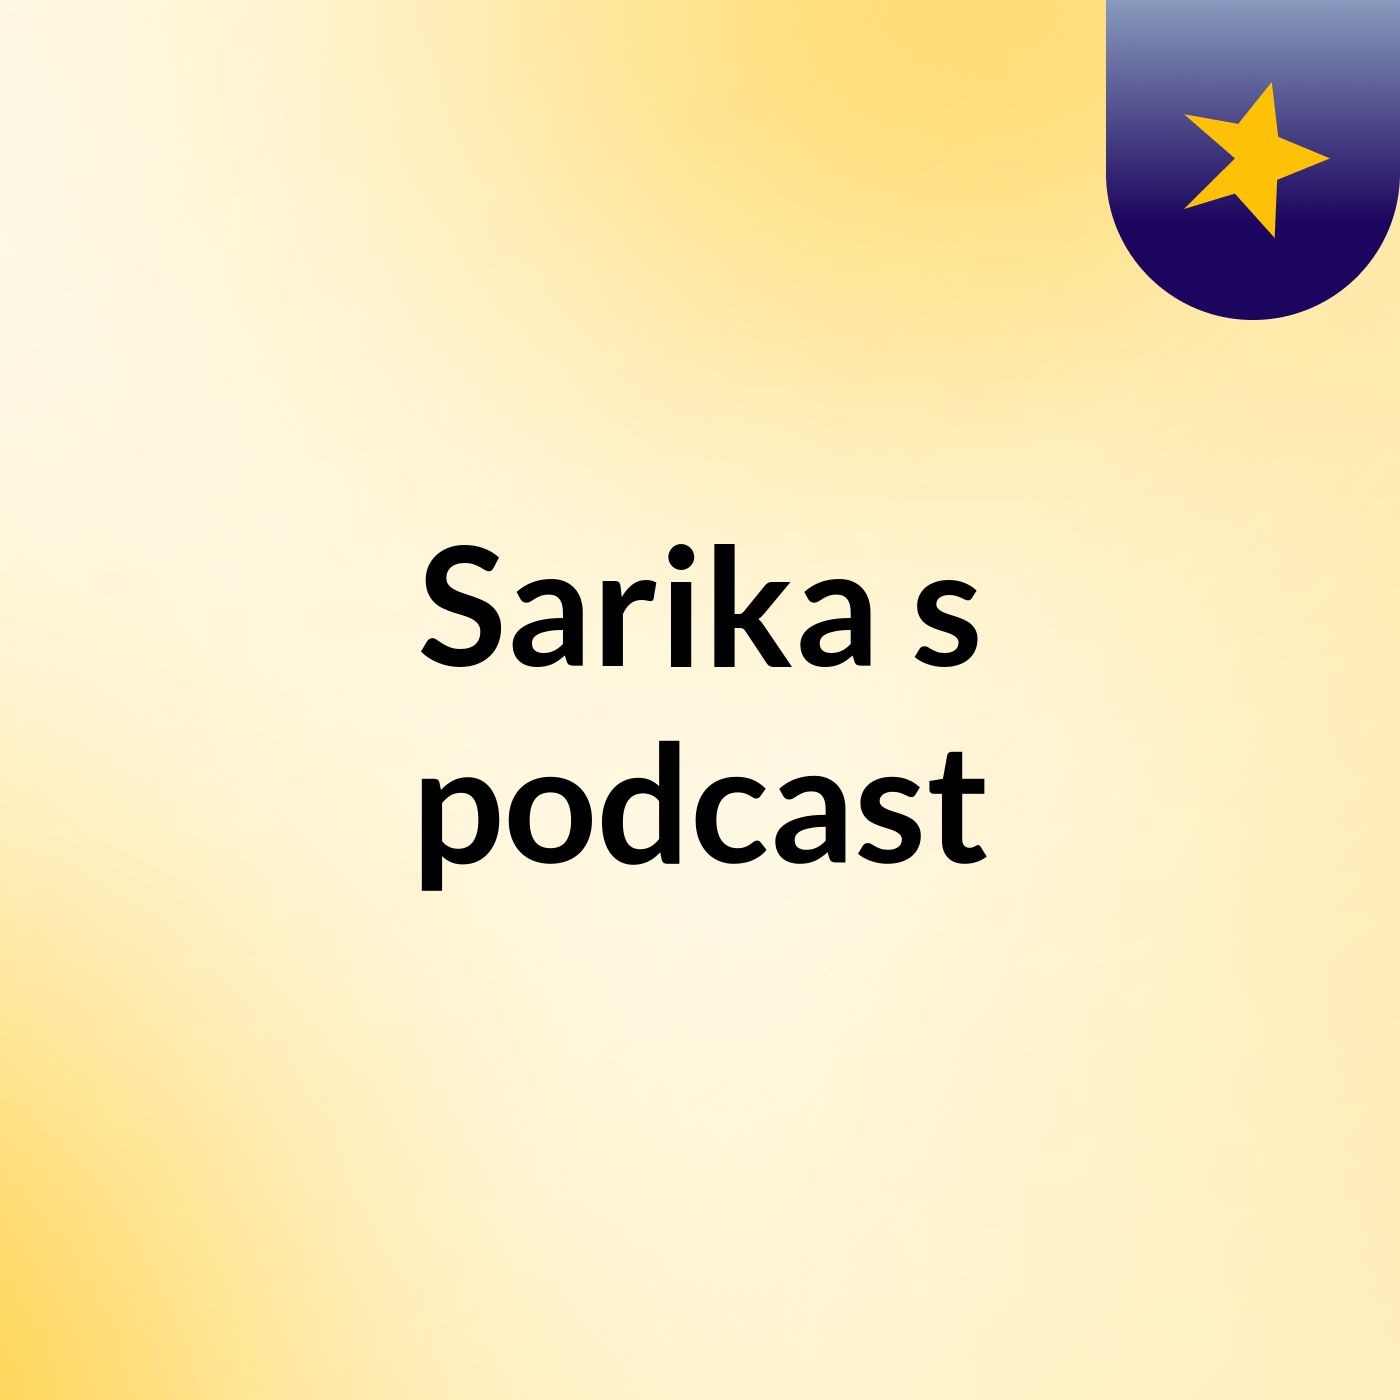 Sarika's podcast